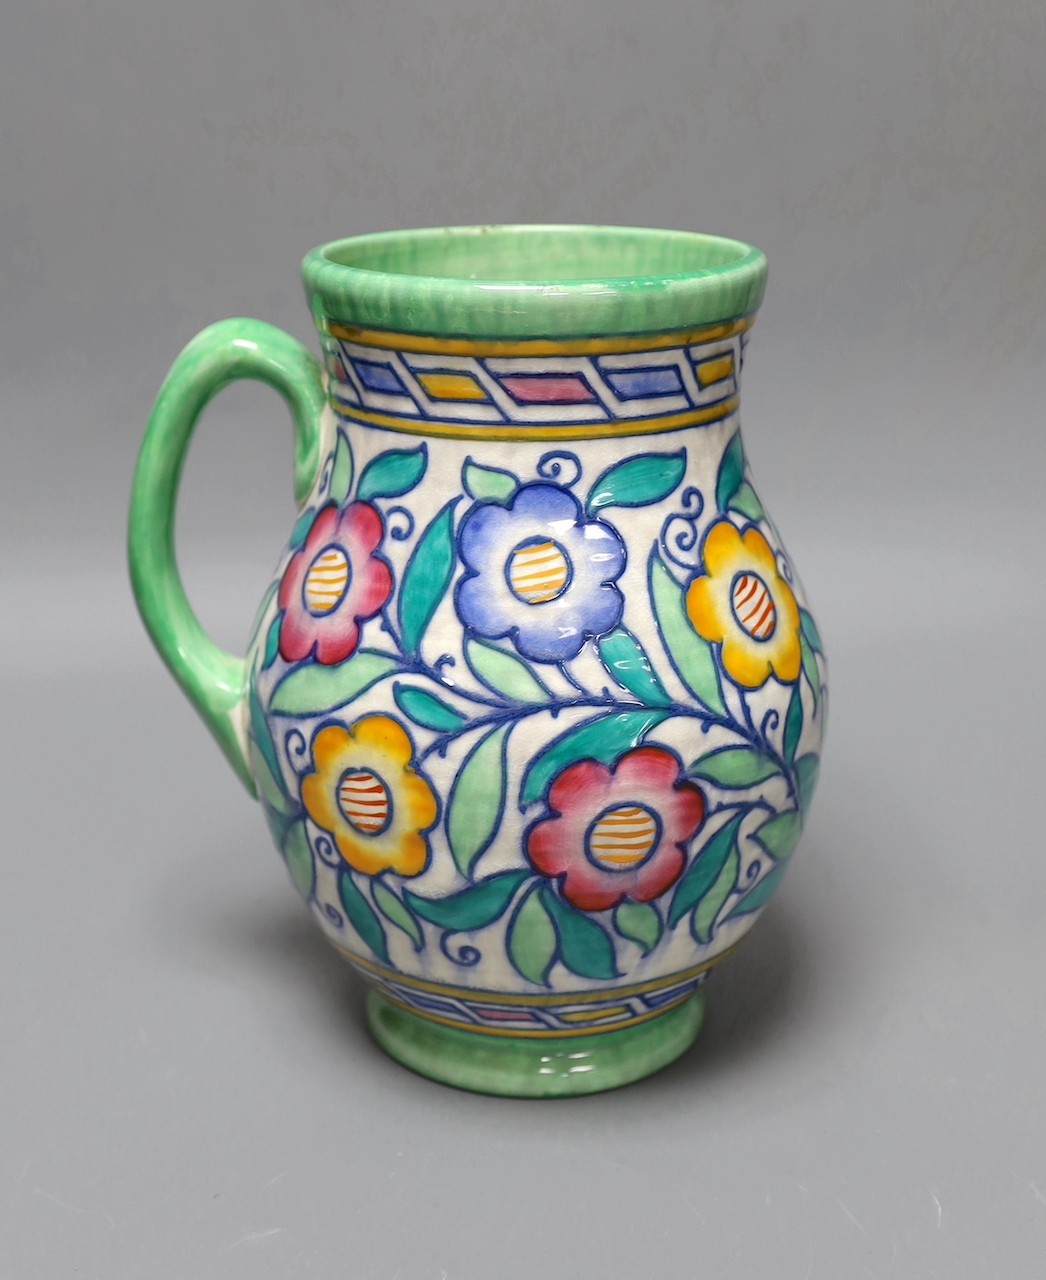 A Charlotte Rhead jug,22 cms high.